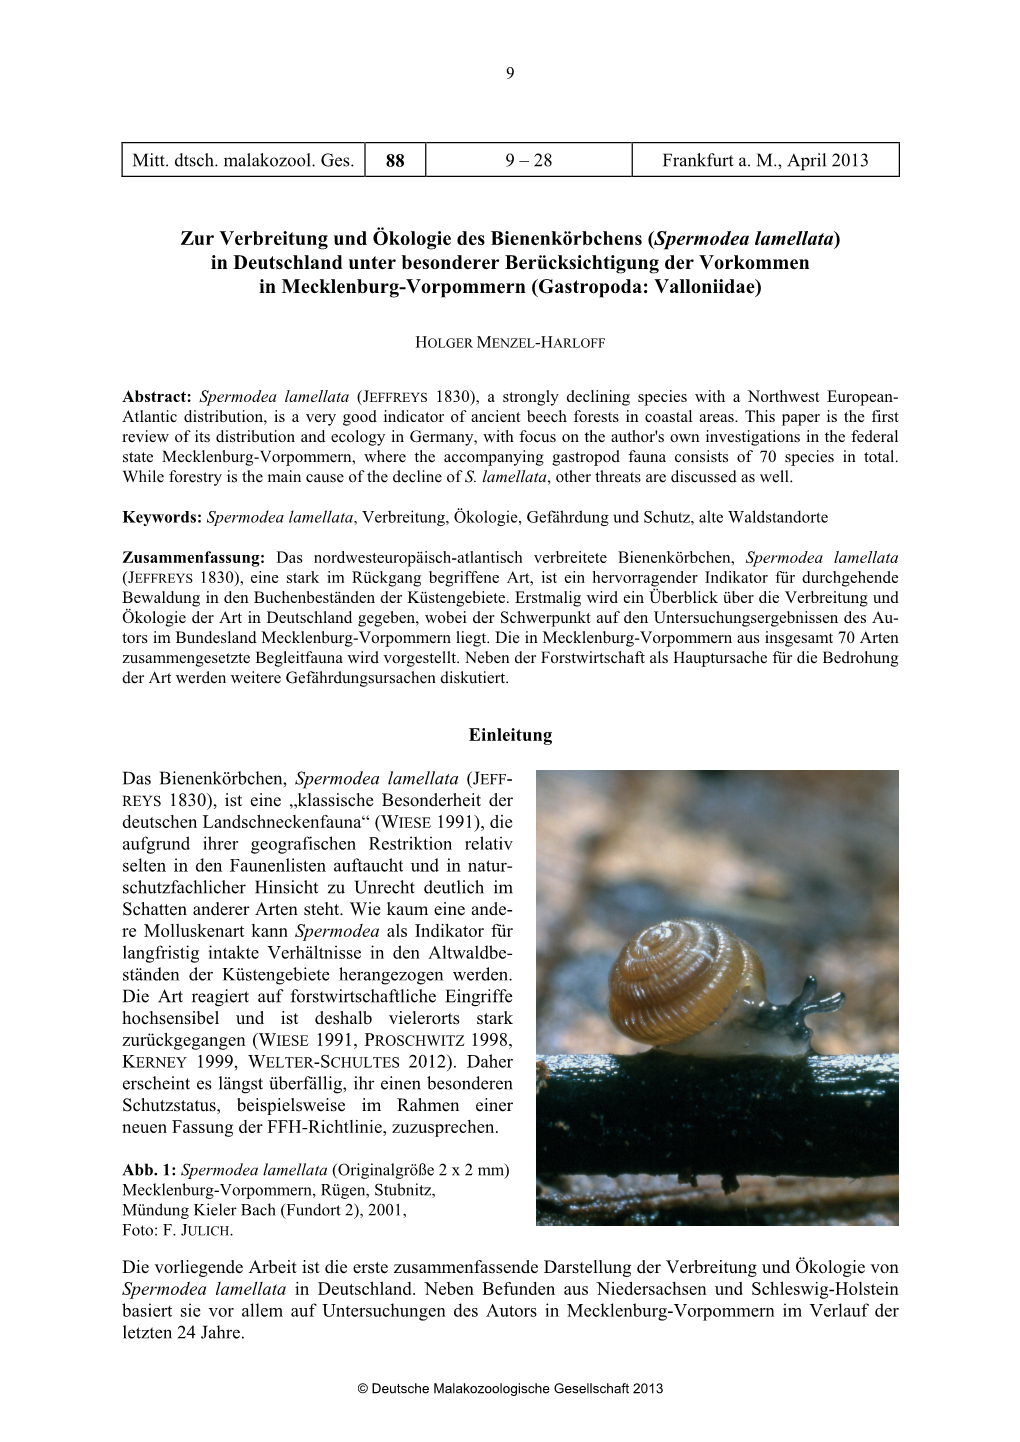 Spermodea Lamellata) in Deutschland Unter Besonderer Berücksichtigung Der Vorkommen in Mecklenburg-Vorpommern (Gastropoda: Valloniidae)